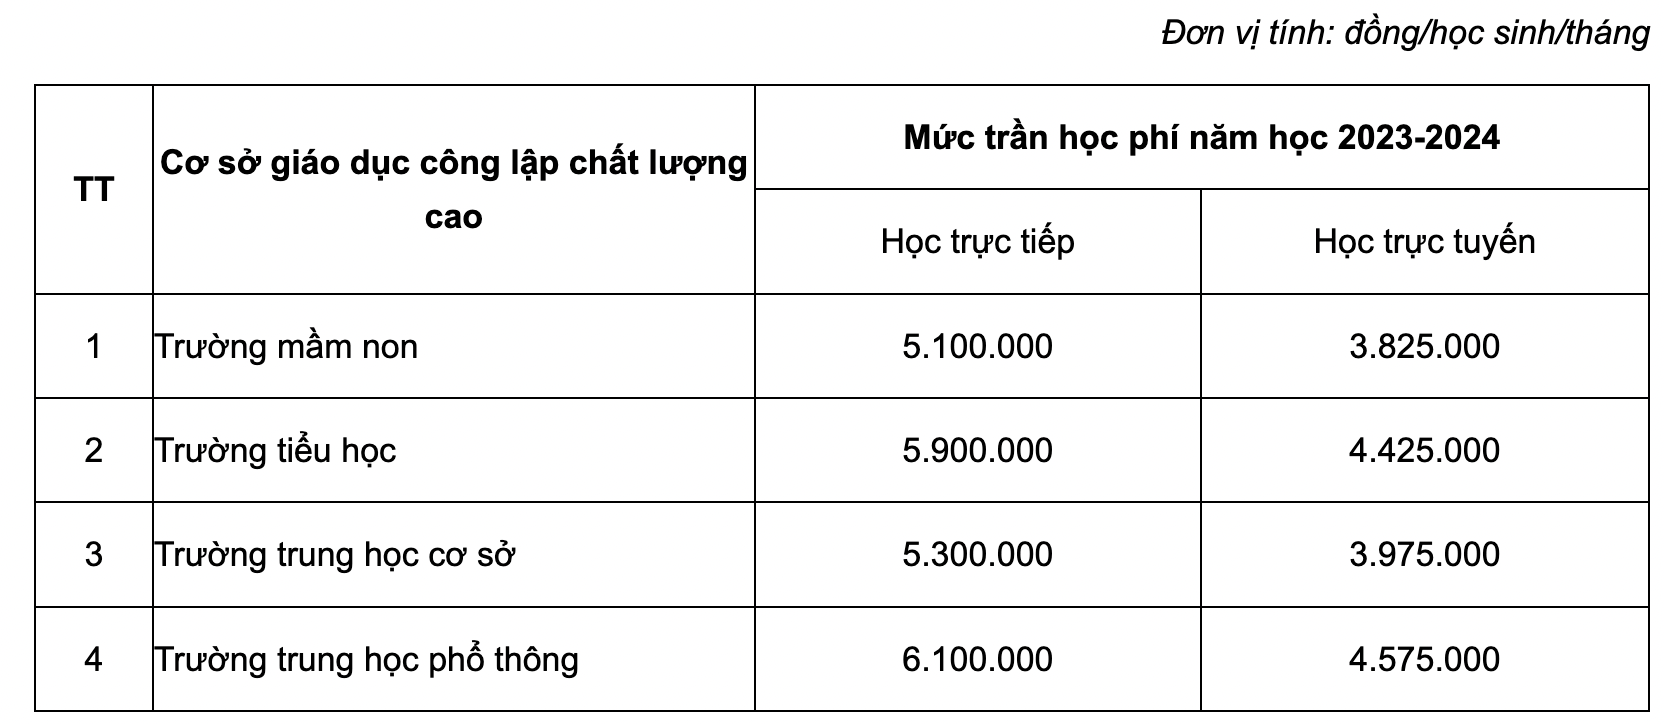 Học phí các các trường công lập chất lượng cao ở Hà Nội từ năm 2023-2024.